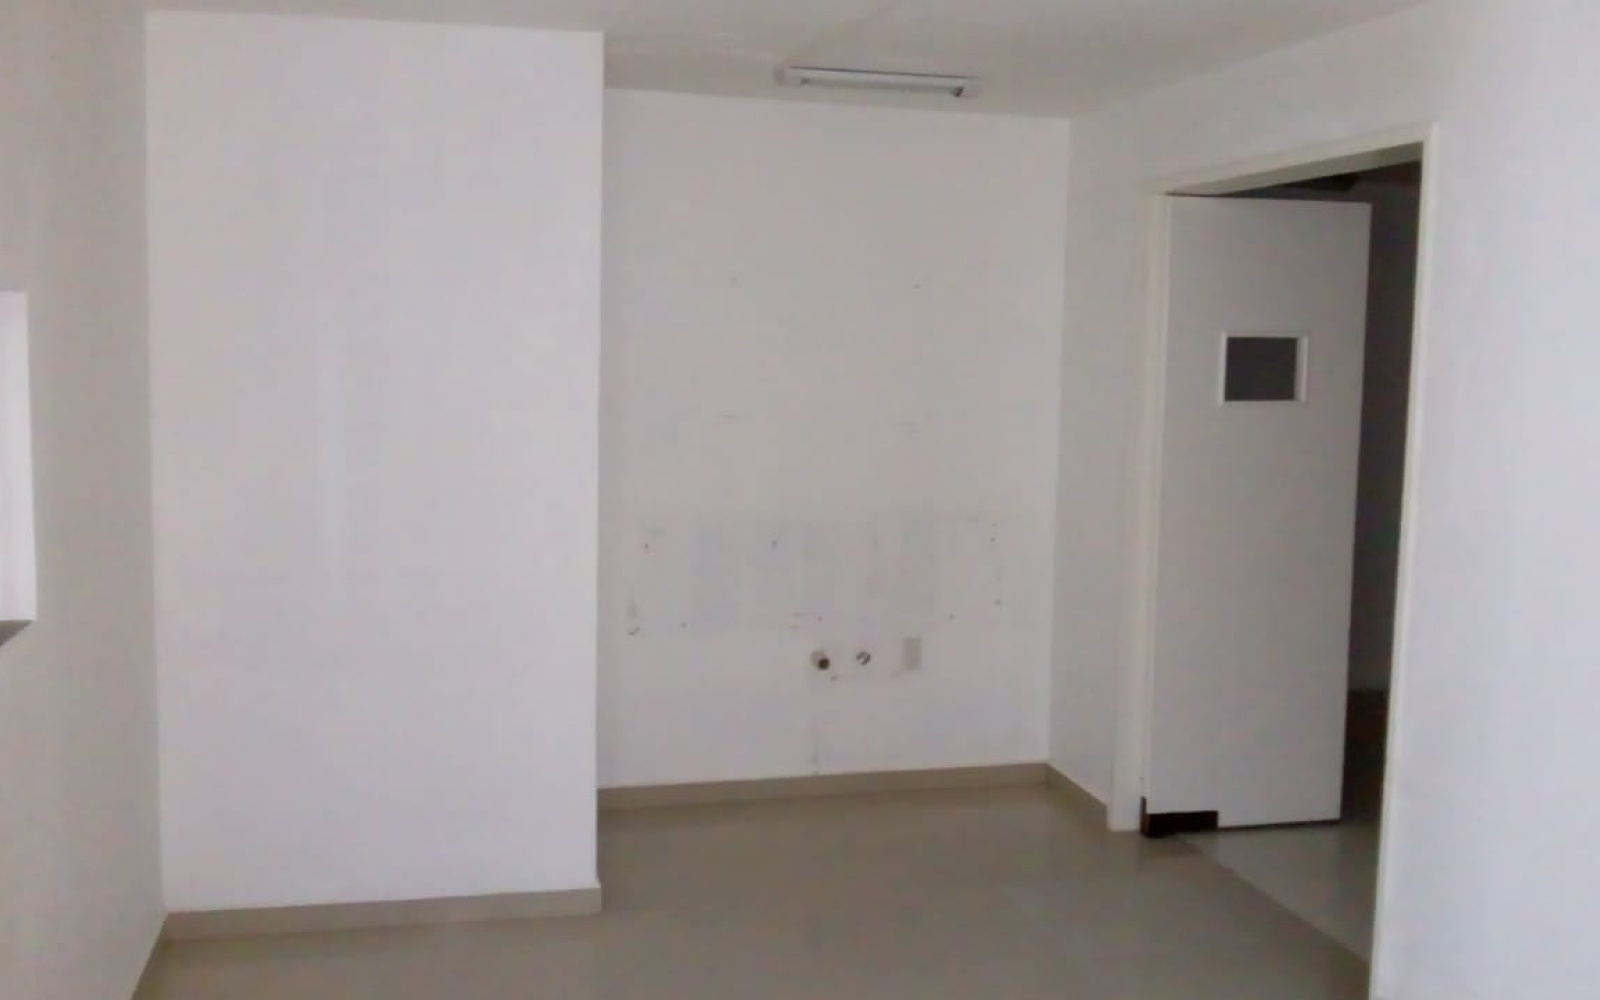 Zaragoza, San José del cabo, Baja California Sur 23400, 5 Rooms Rooms,7 BathroomsBathrooms,Office,For Sale,Zaragoza,1035